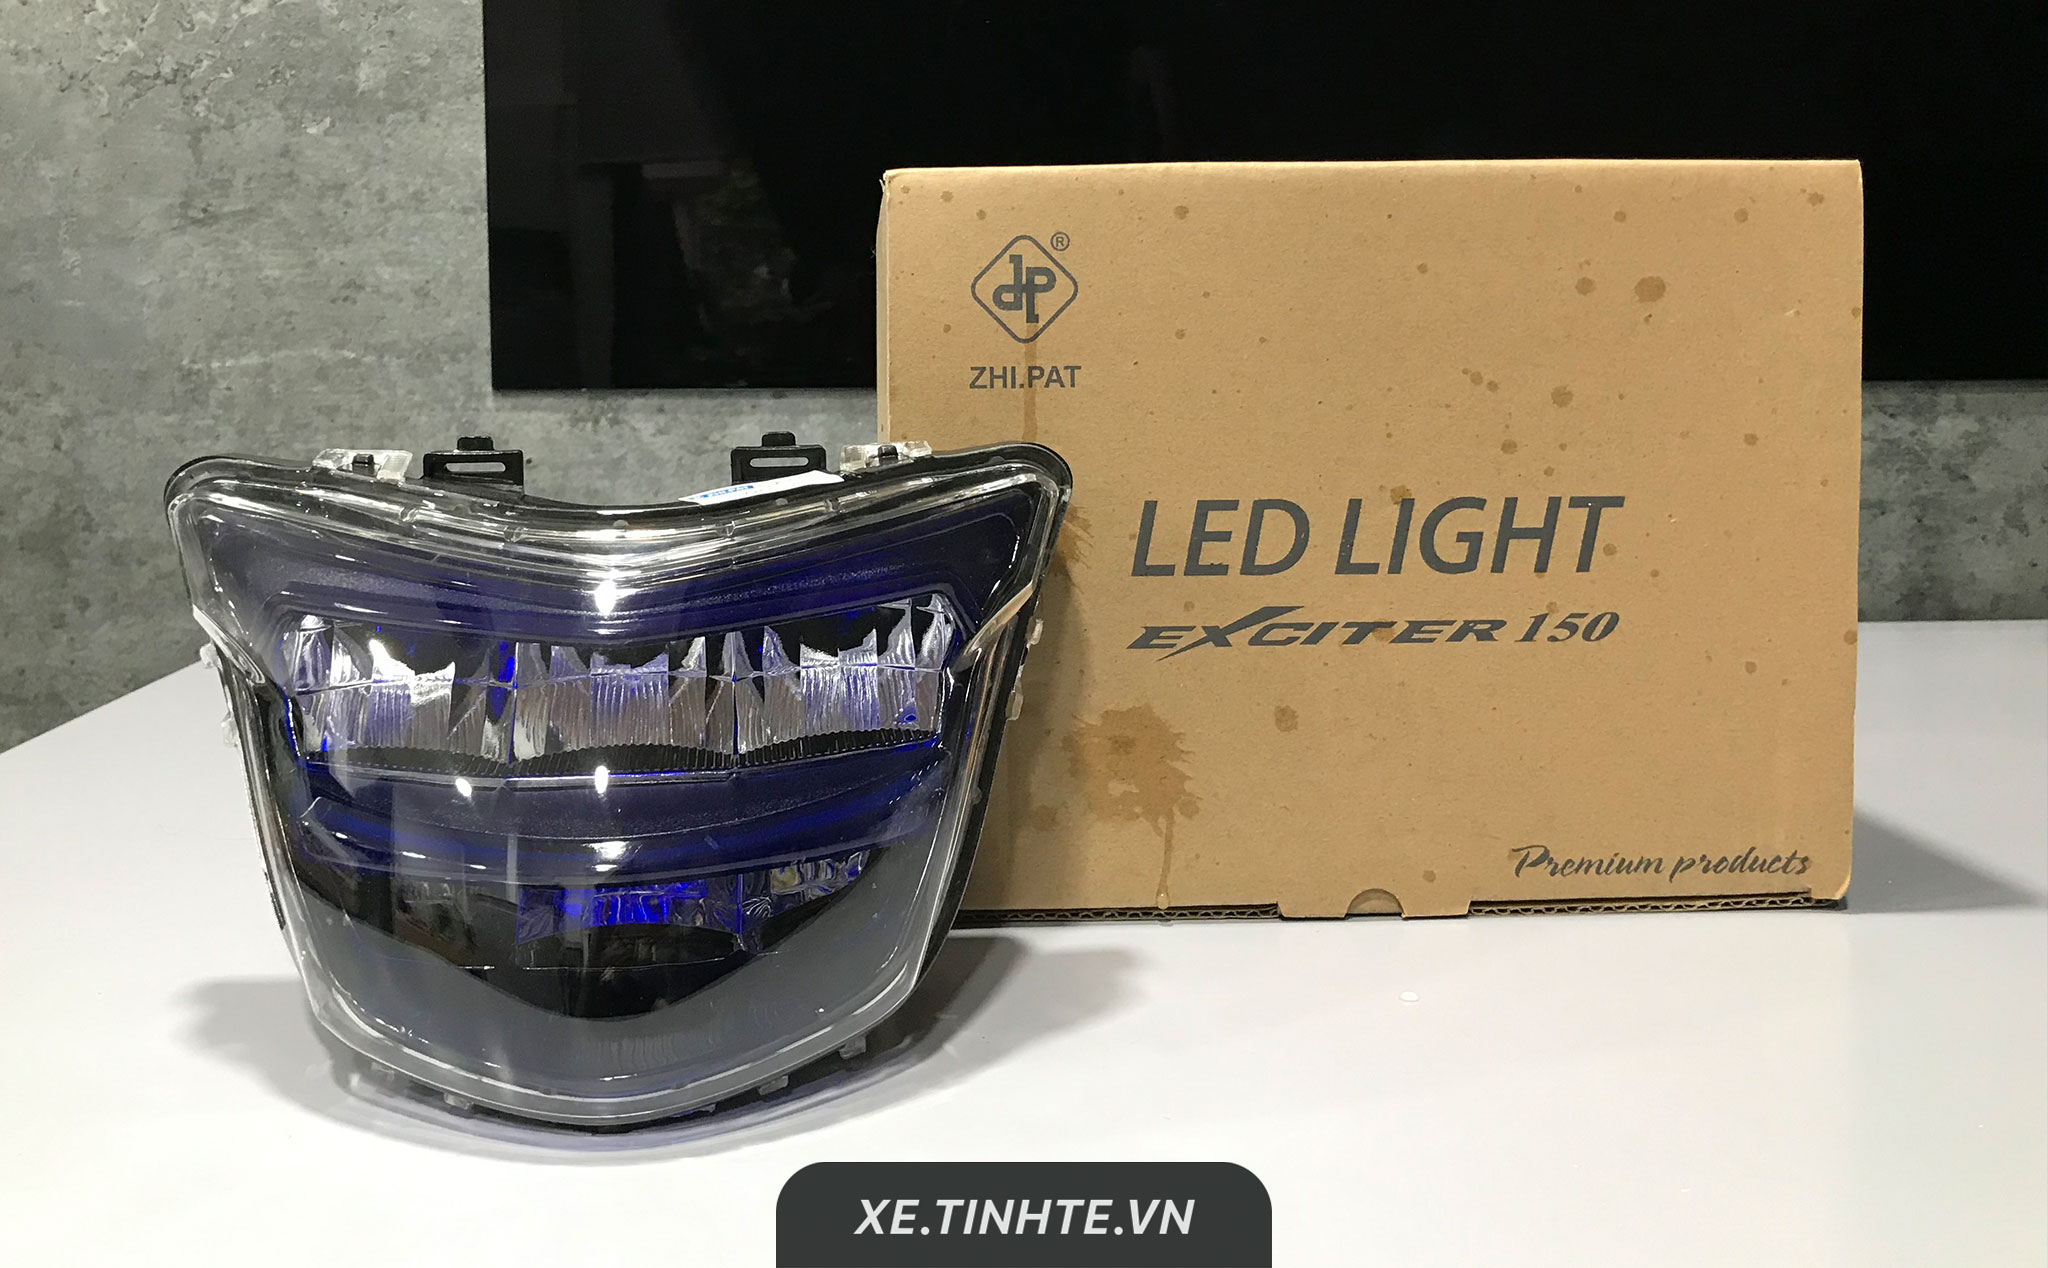 [Game] Post hình xe Exciter 150, nhận đèn LED cho Exciter 150 đời trước nâng cấp